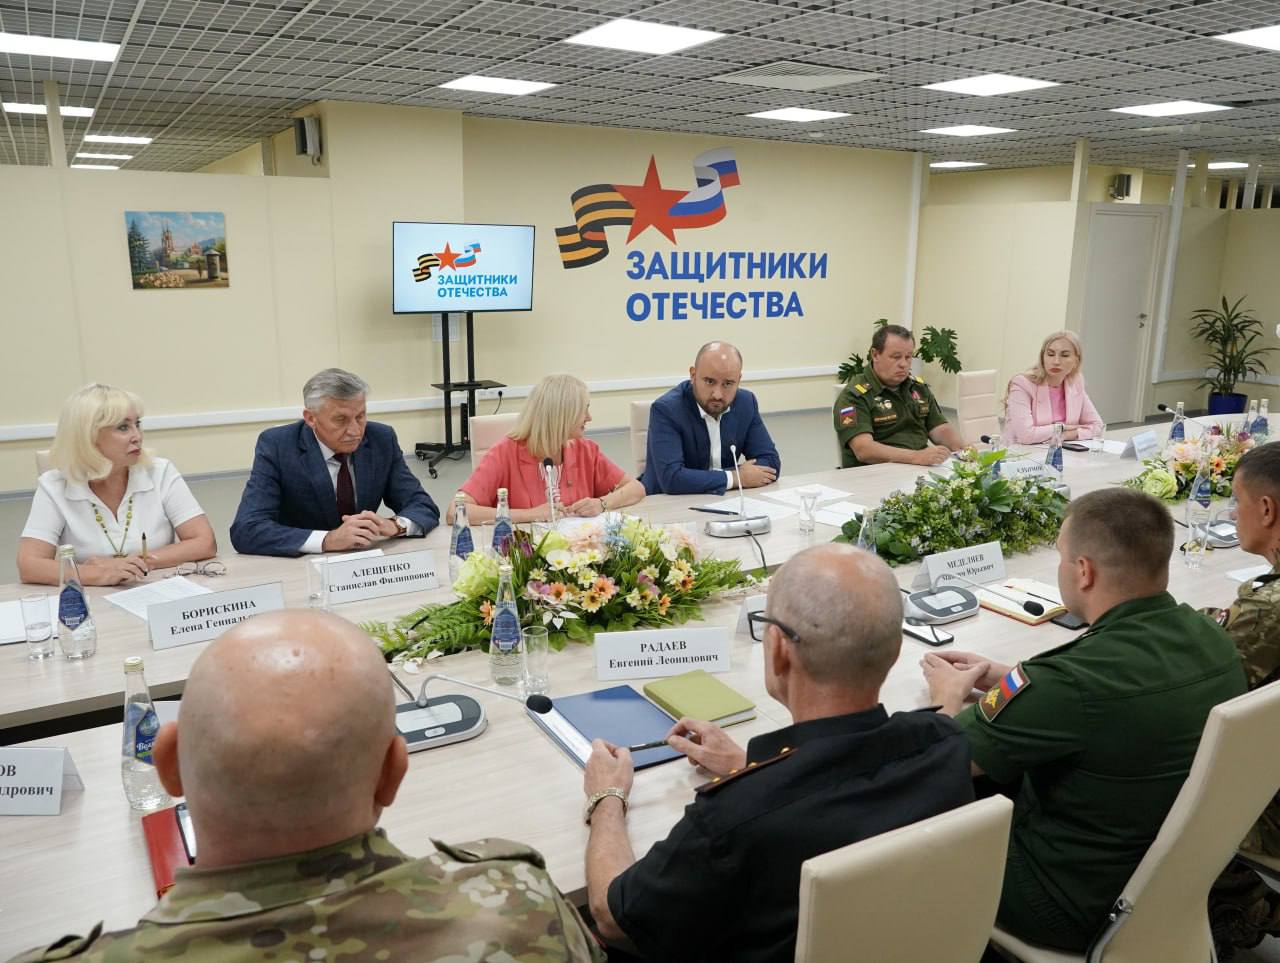  Врио губернатора Самарской области В. Федорищев встретился с ветеранами СВО 